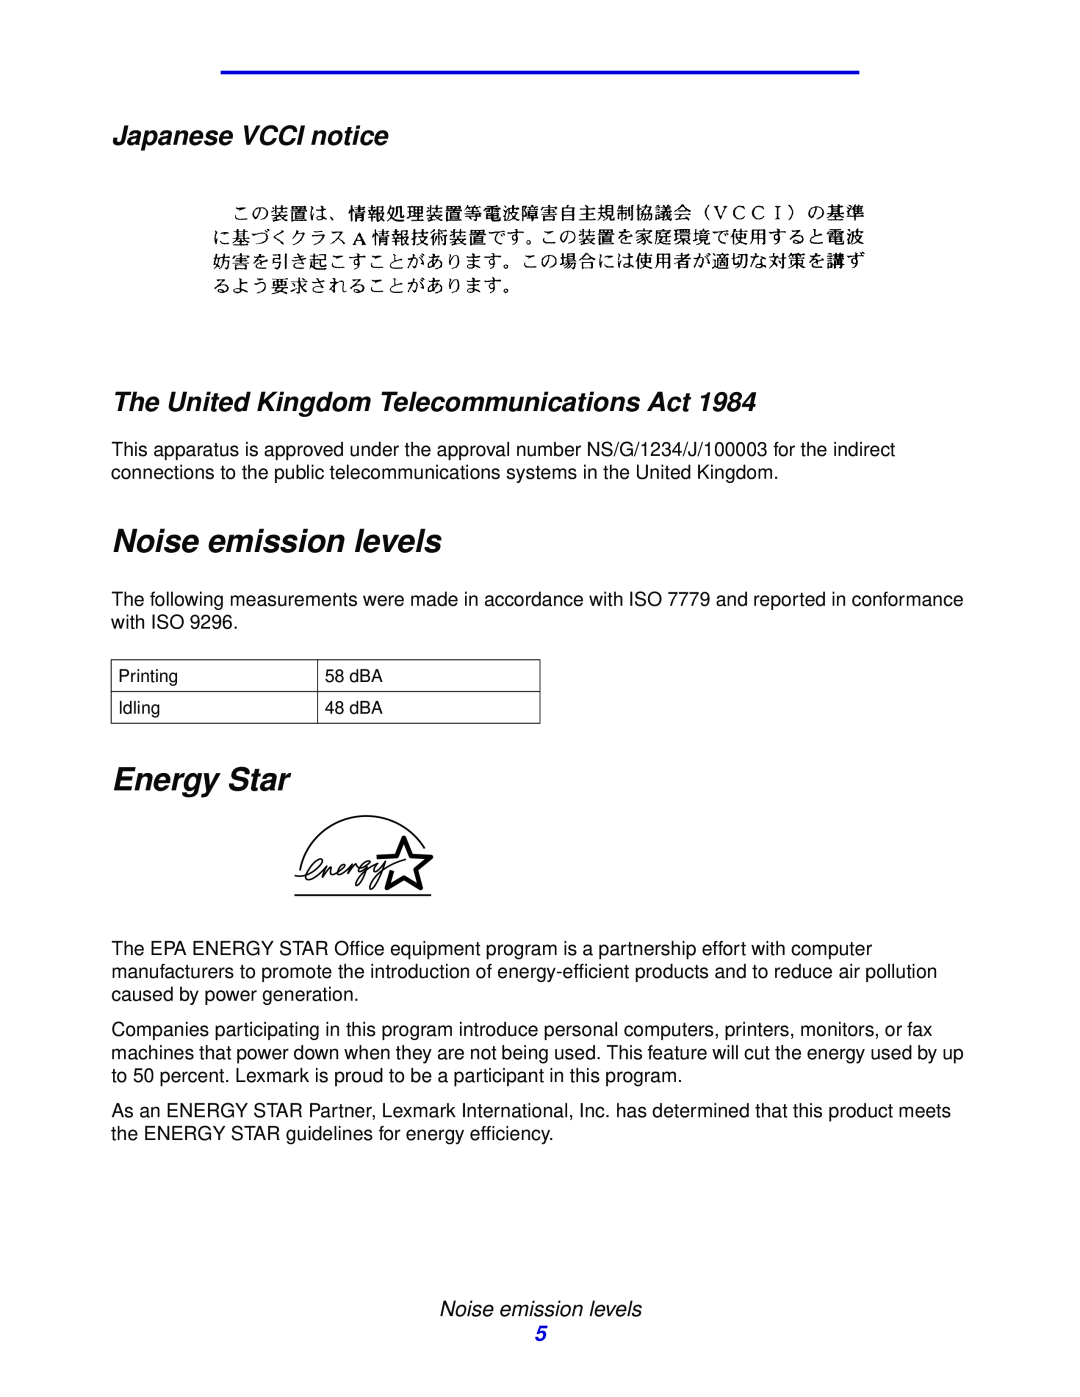 Lexmark 912 manual Noise emission levels, Energy Star, Japanese VCCI notice The United Kingdom Telecommunications Act 